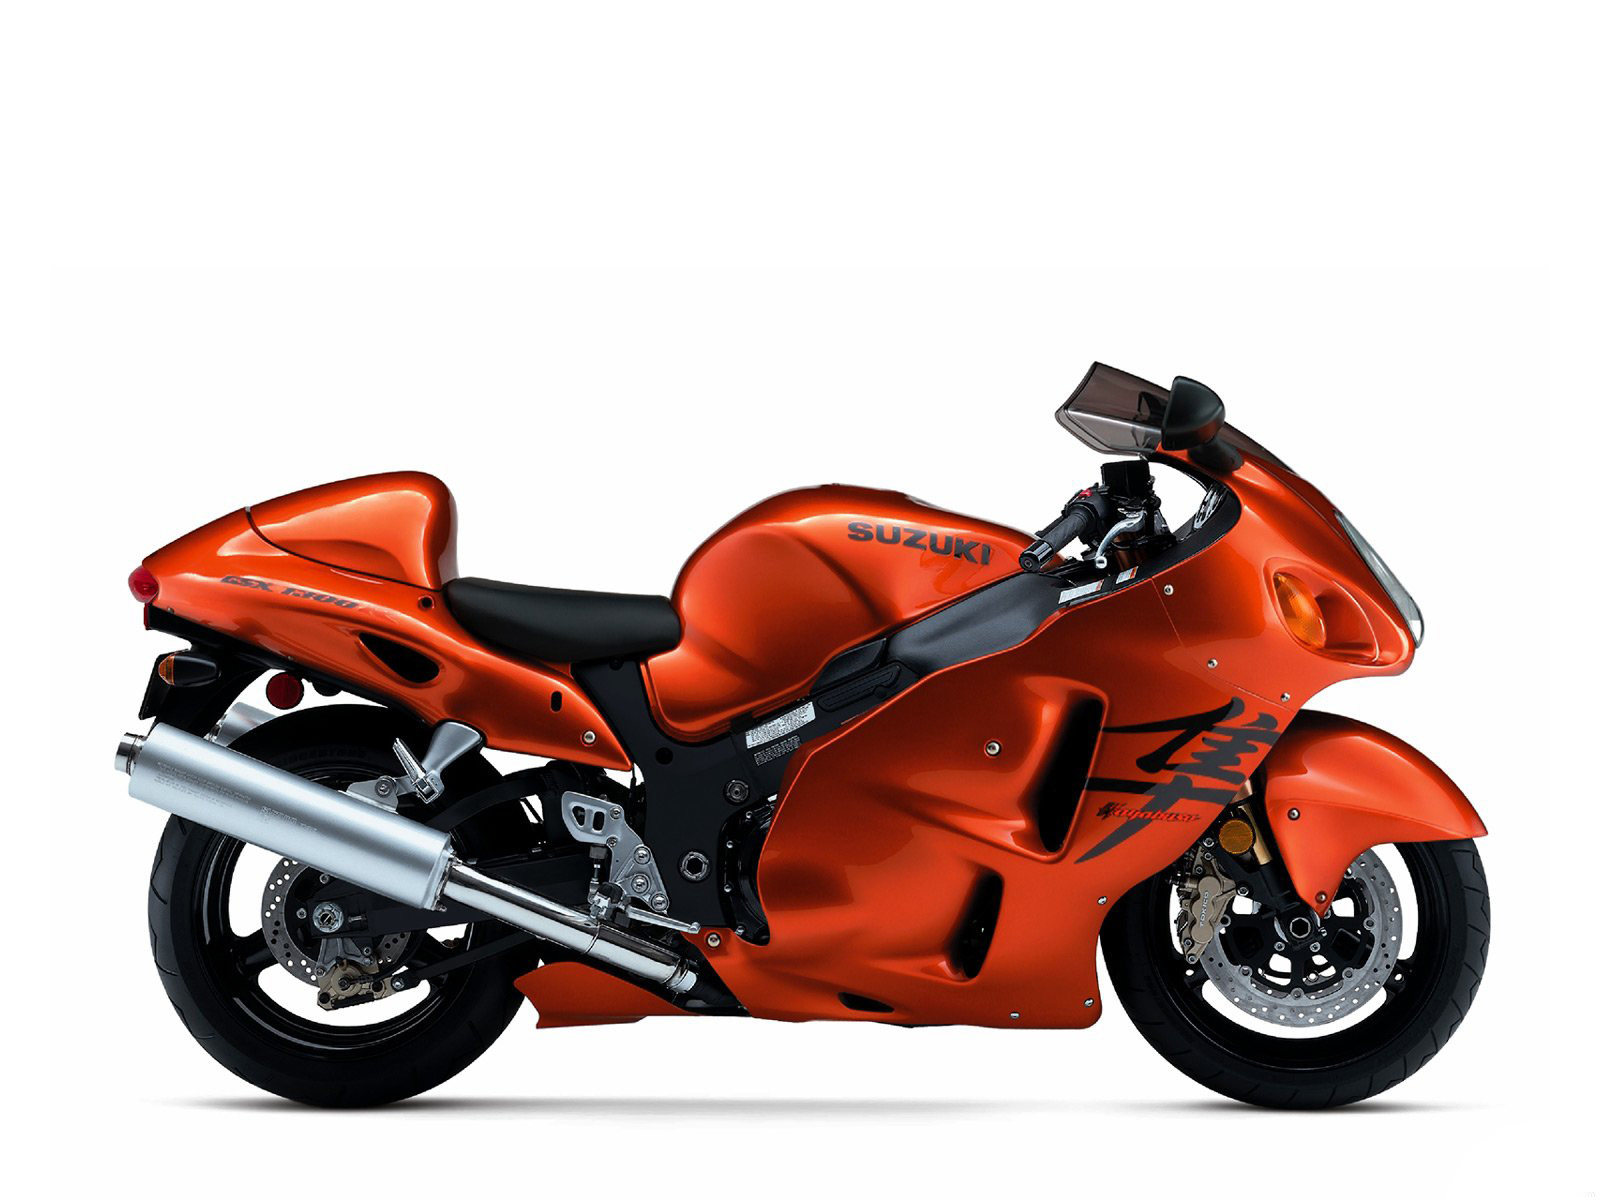 Orange Suzuki GSX 1300 R Hayabusa Motorcycle